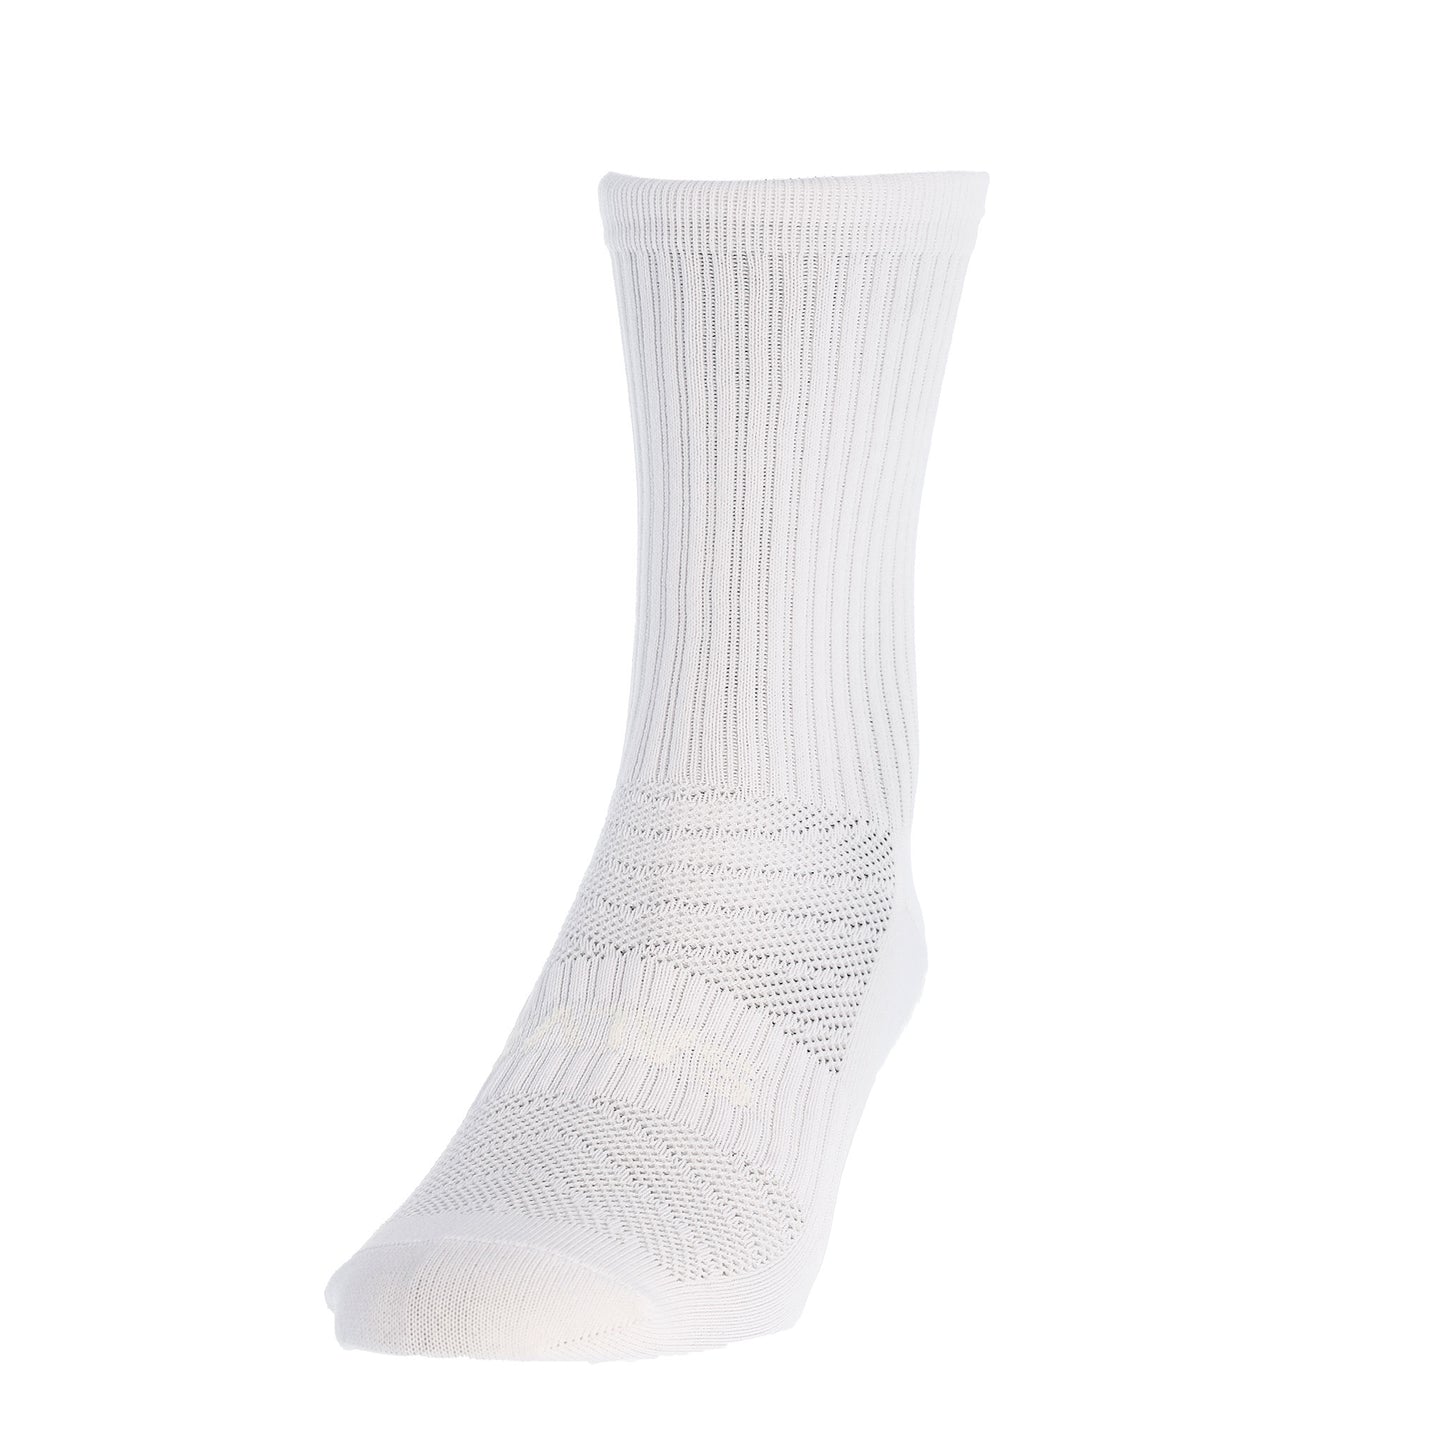 Salve Grip-socks Light, white